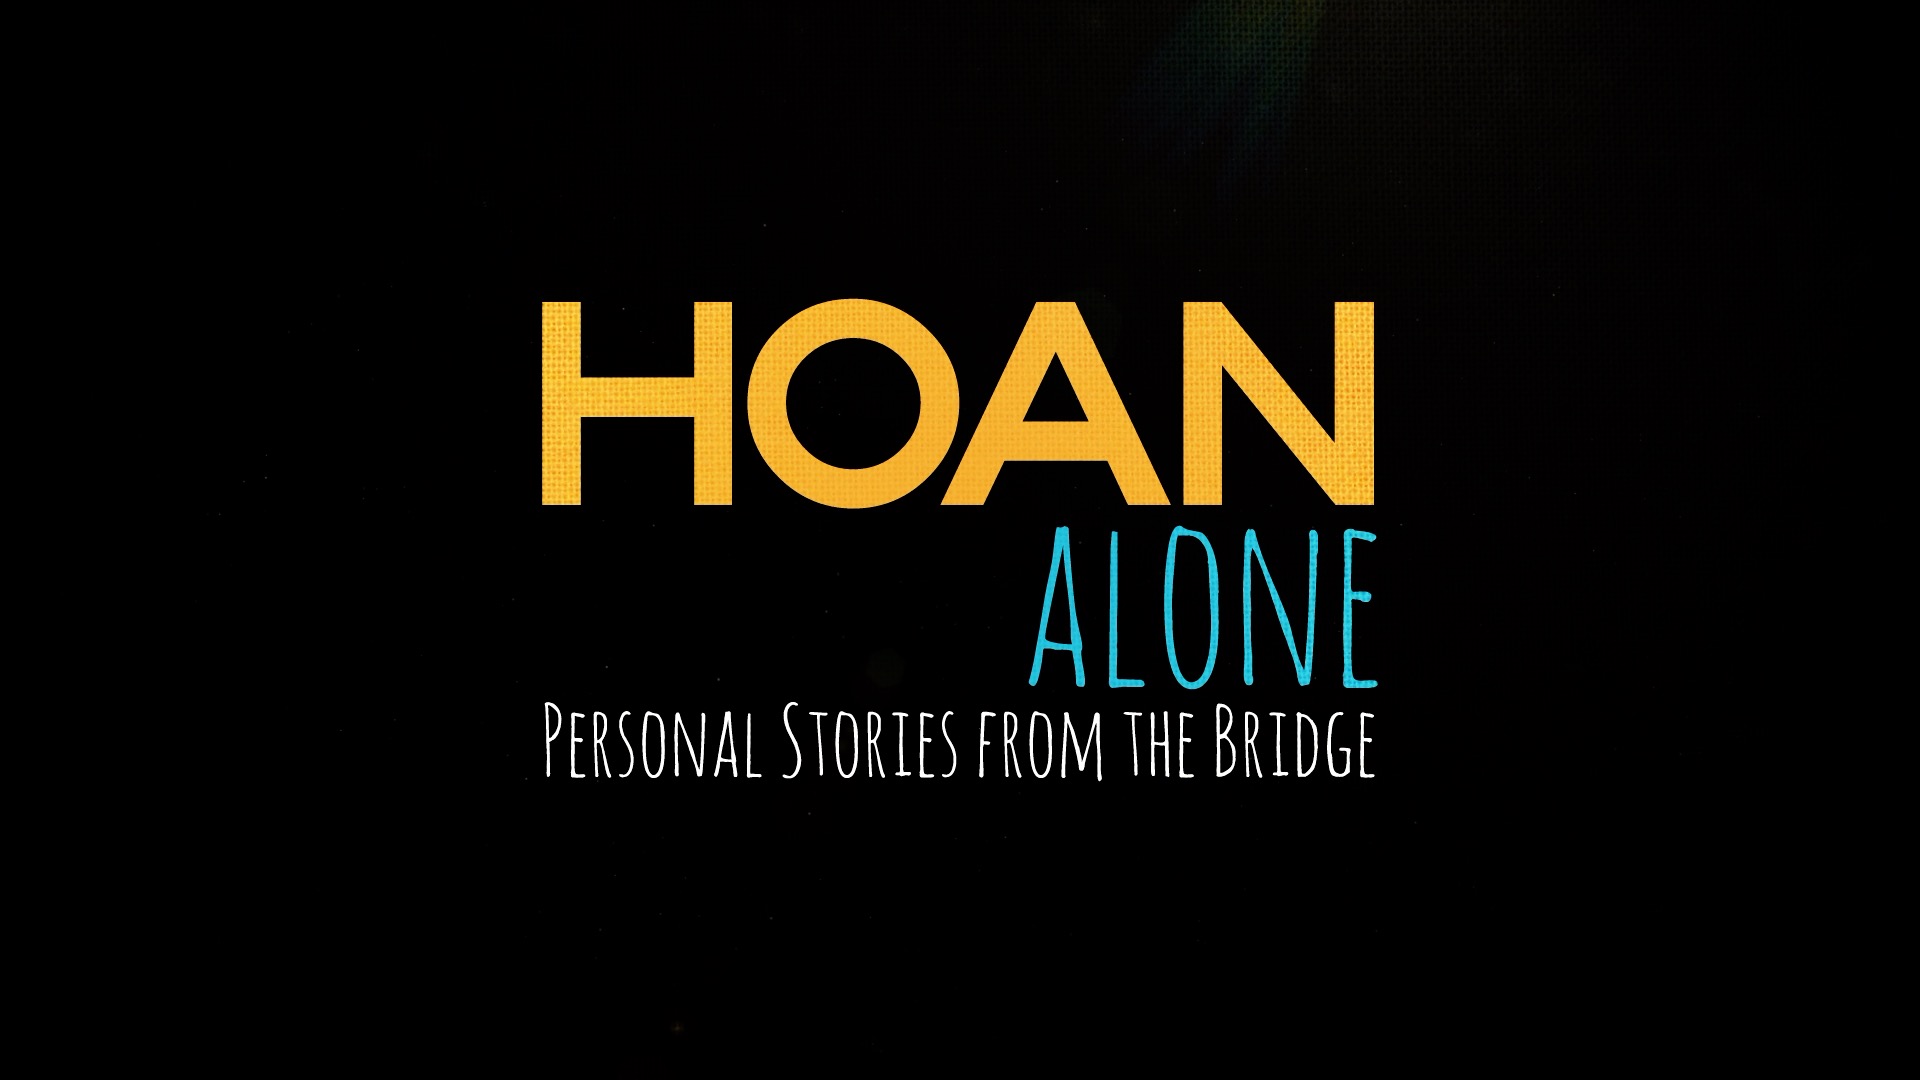 Hoan alone